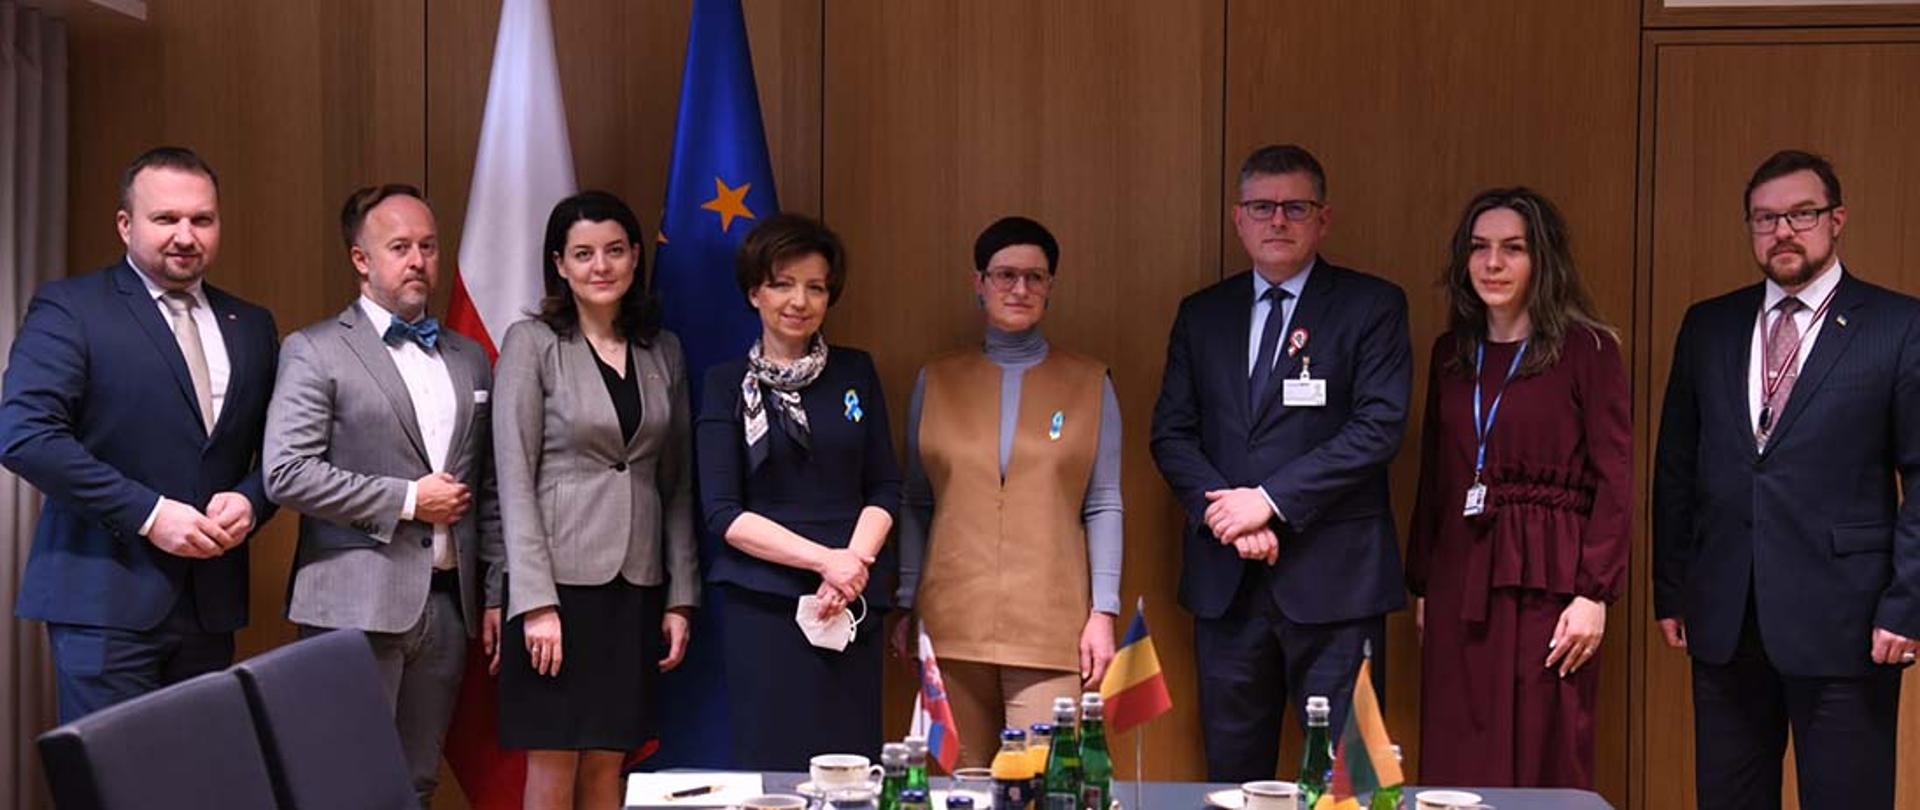 Zdjęcie grupowe uczestników posiedzenia Rady UE ds. Zatrudnienia, Polityki Społecznej, Zdrowia i Ochrony Konsumentów, 